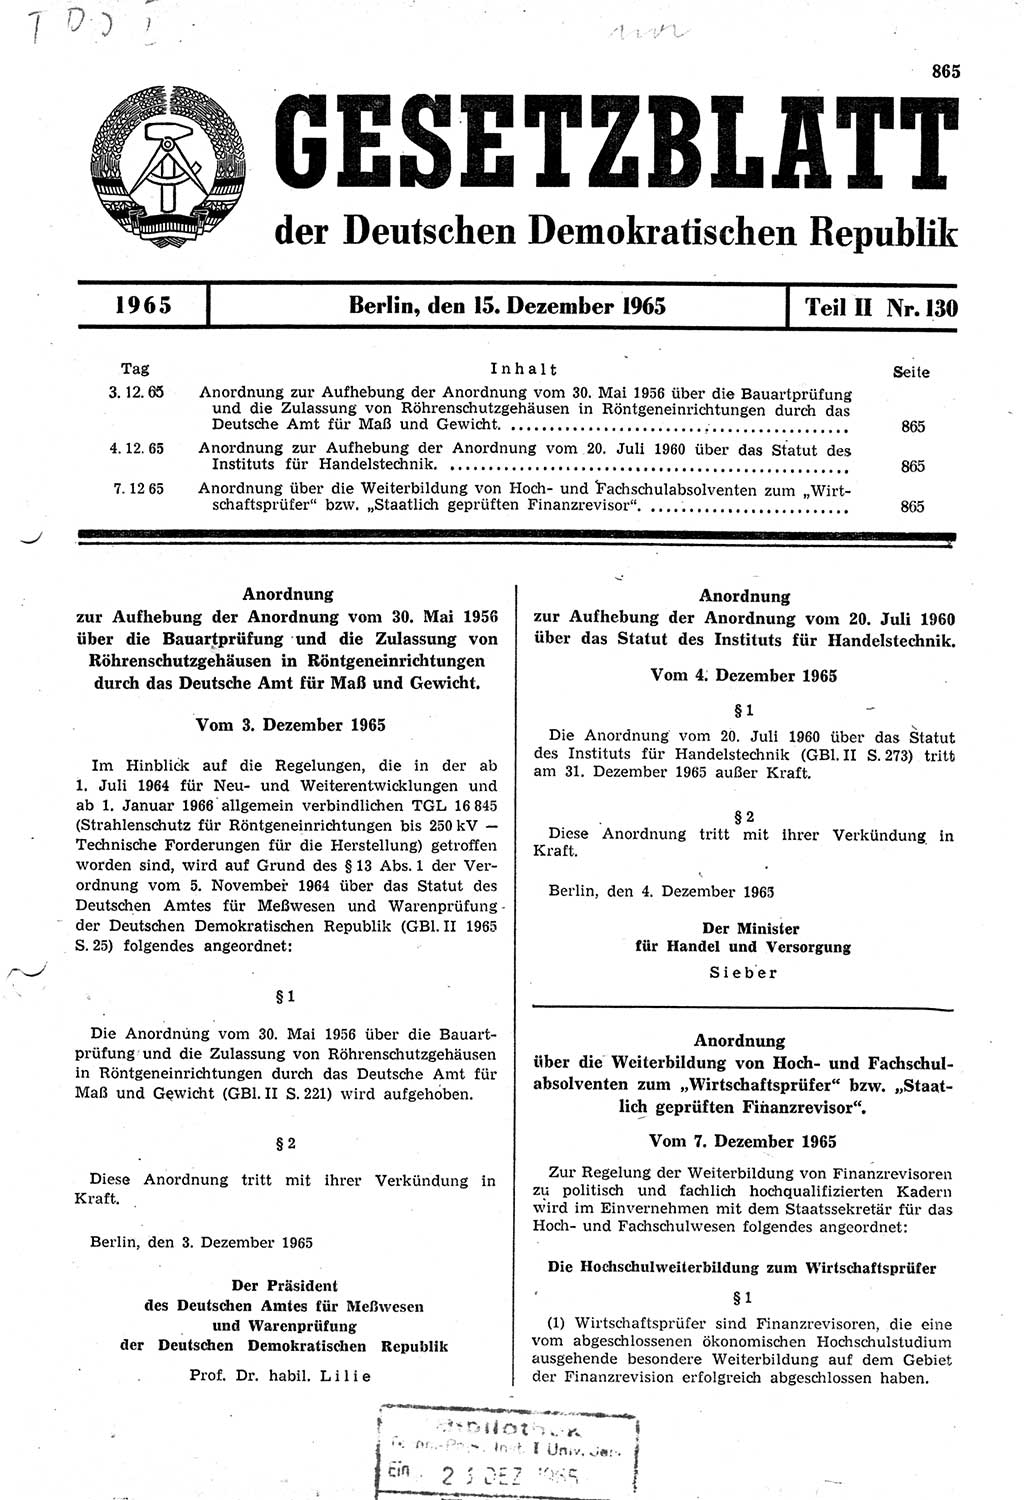 Gesetzblatt (GBl.) der Deutschen Demokratischen Republik (DDR) Teil ⅠⅠ 1965, Seite 865 (GBl. DDR ⅠⅠ 1965, S. 865)